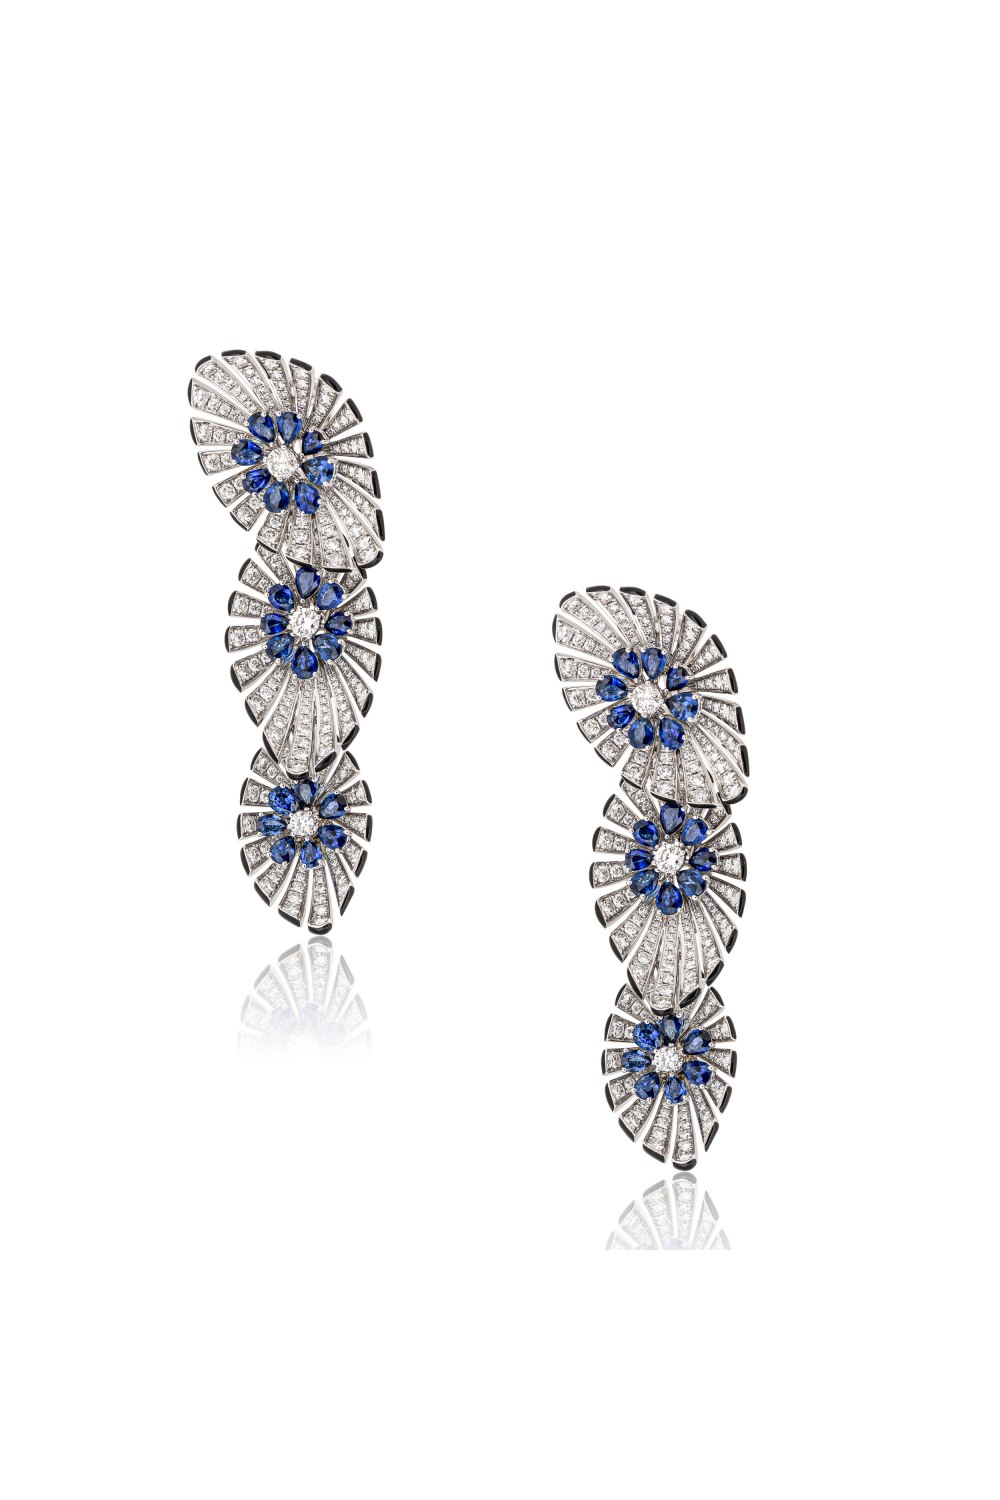 KESSARIS - Blossom Earrings